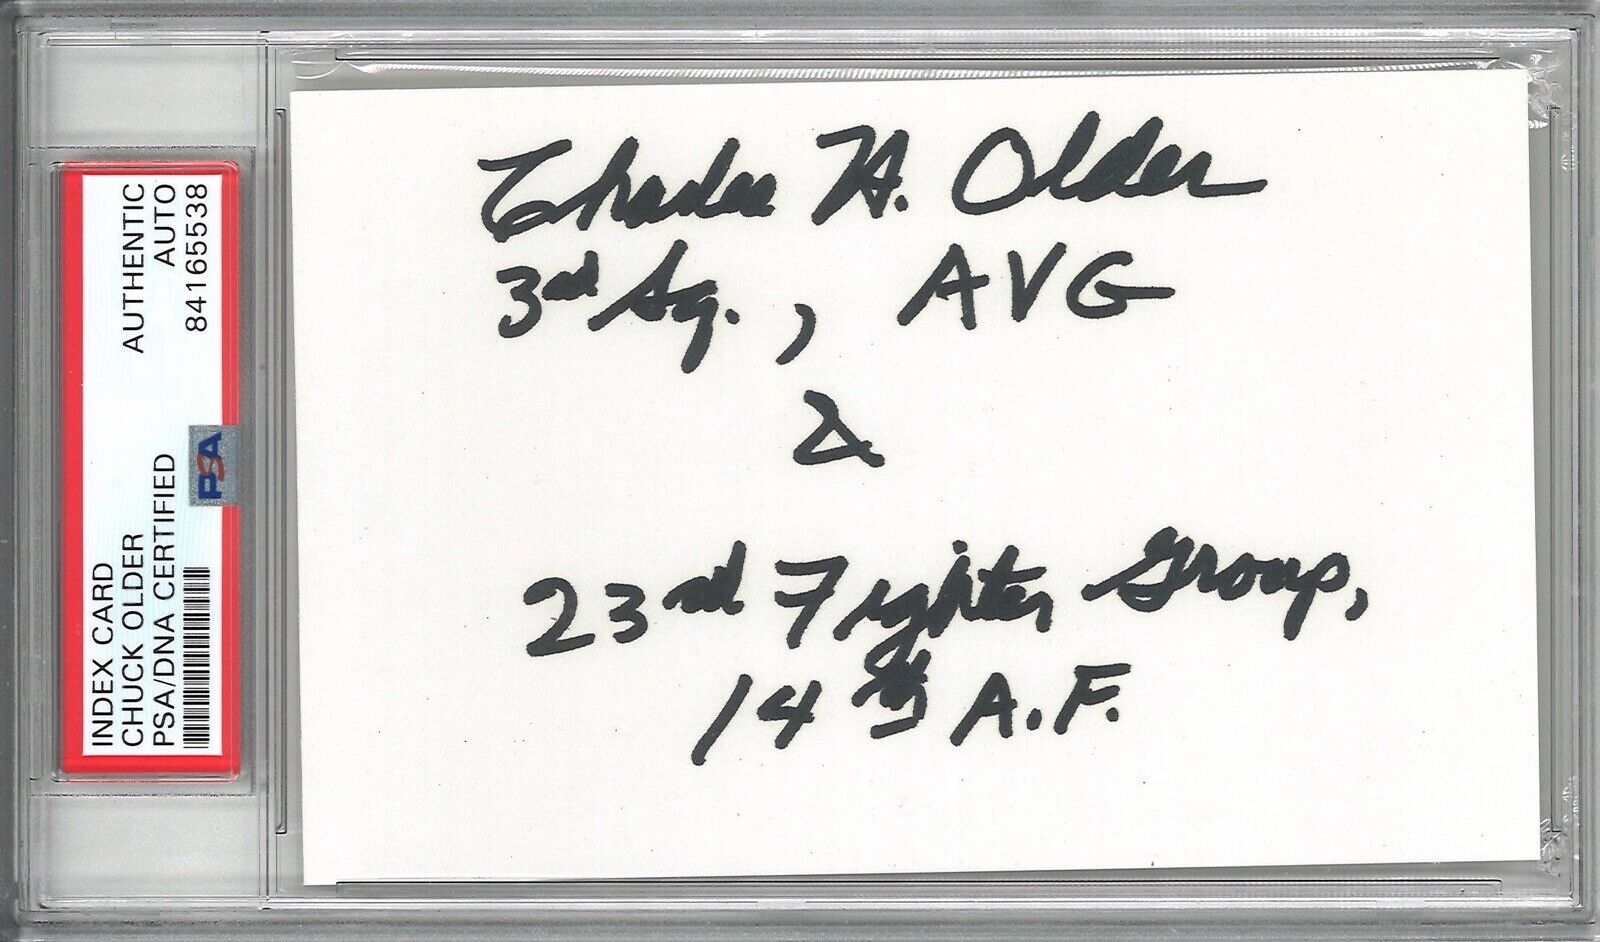 CHARLES OLDER SIGNED INDEX CARD PSA DNA 84165538 WWII ACE 18.25V AVG TIGER